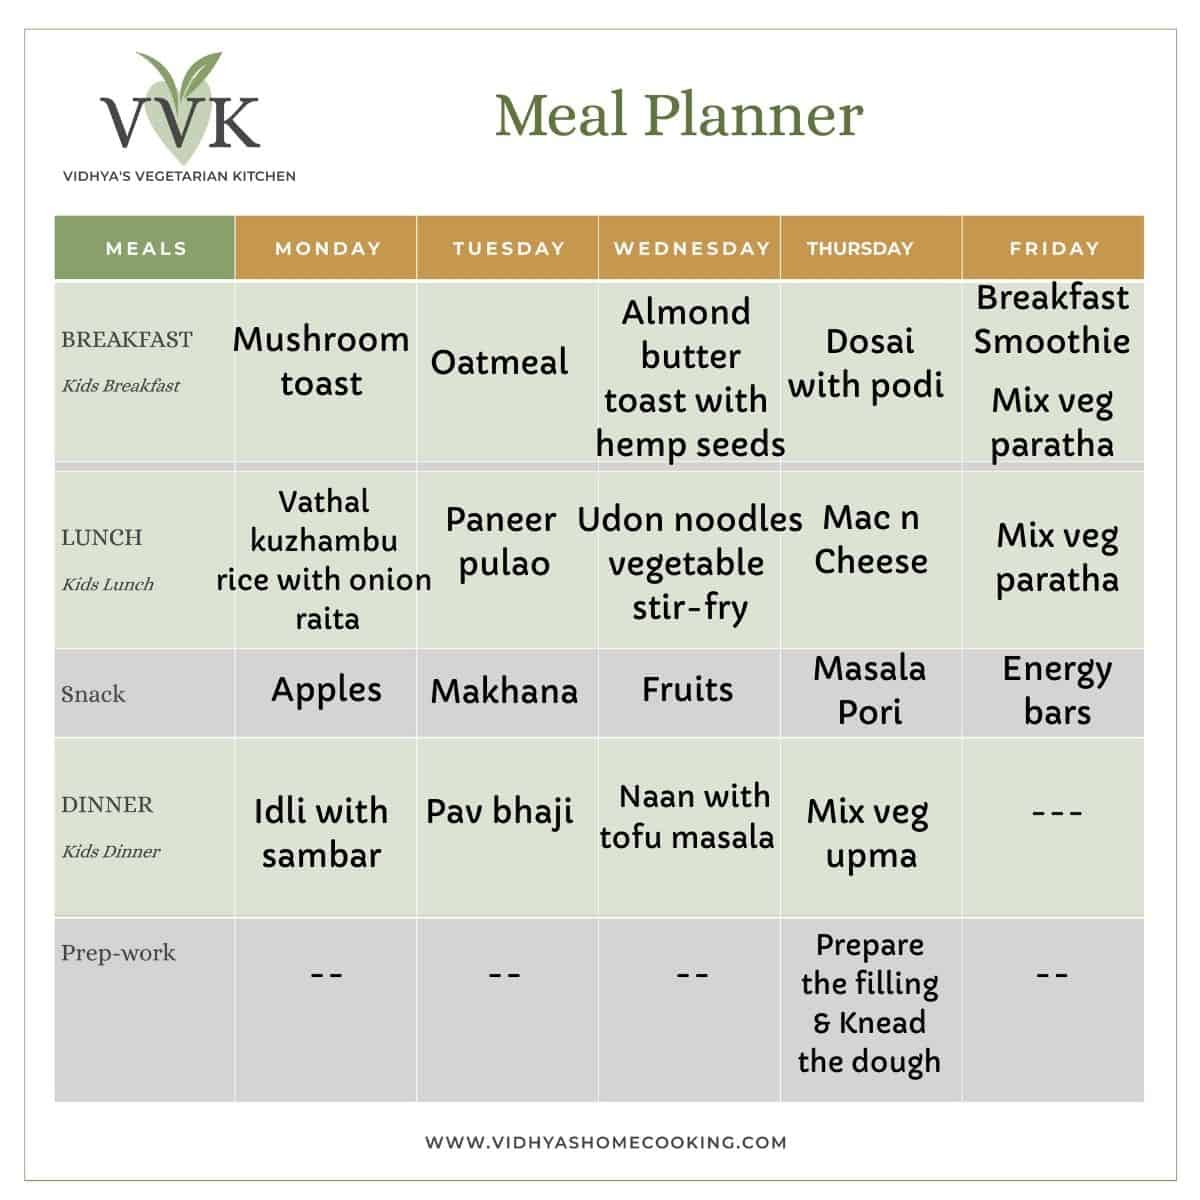 VVK Meal Planner